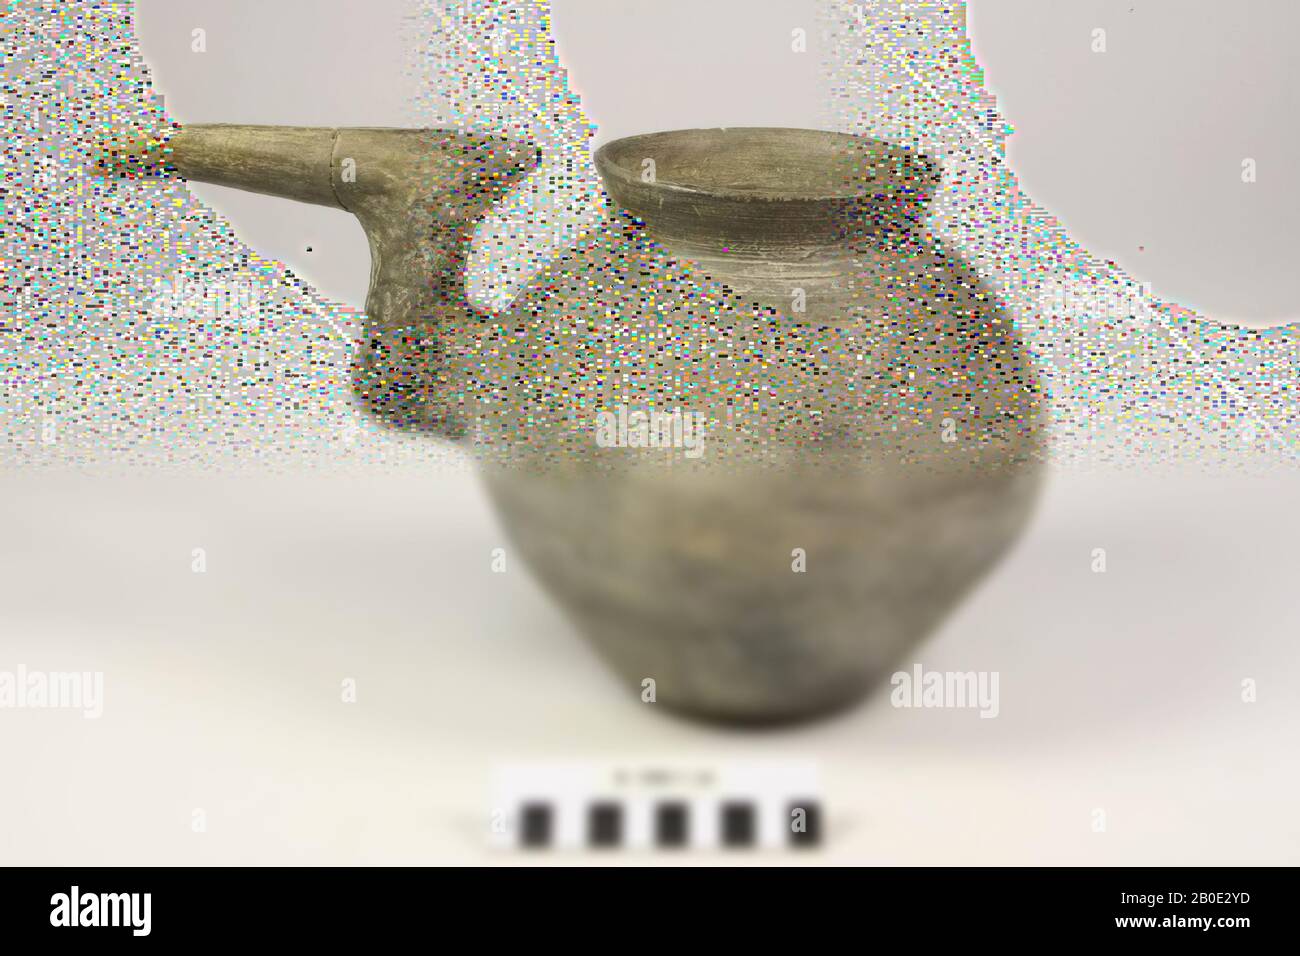 tableware, earthenware, H 20.1 cm, D 19.8 cm, B incl. Spout 31.7 cm, D neck 11.6 cm, Iran Stock Photo